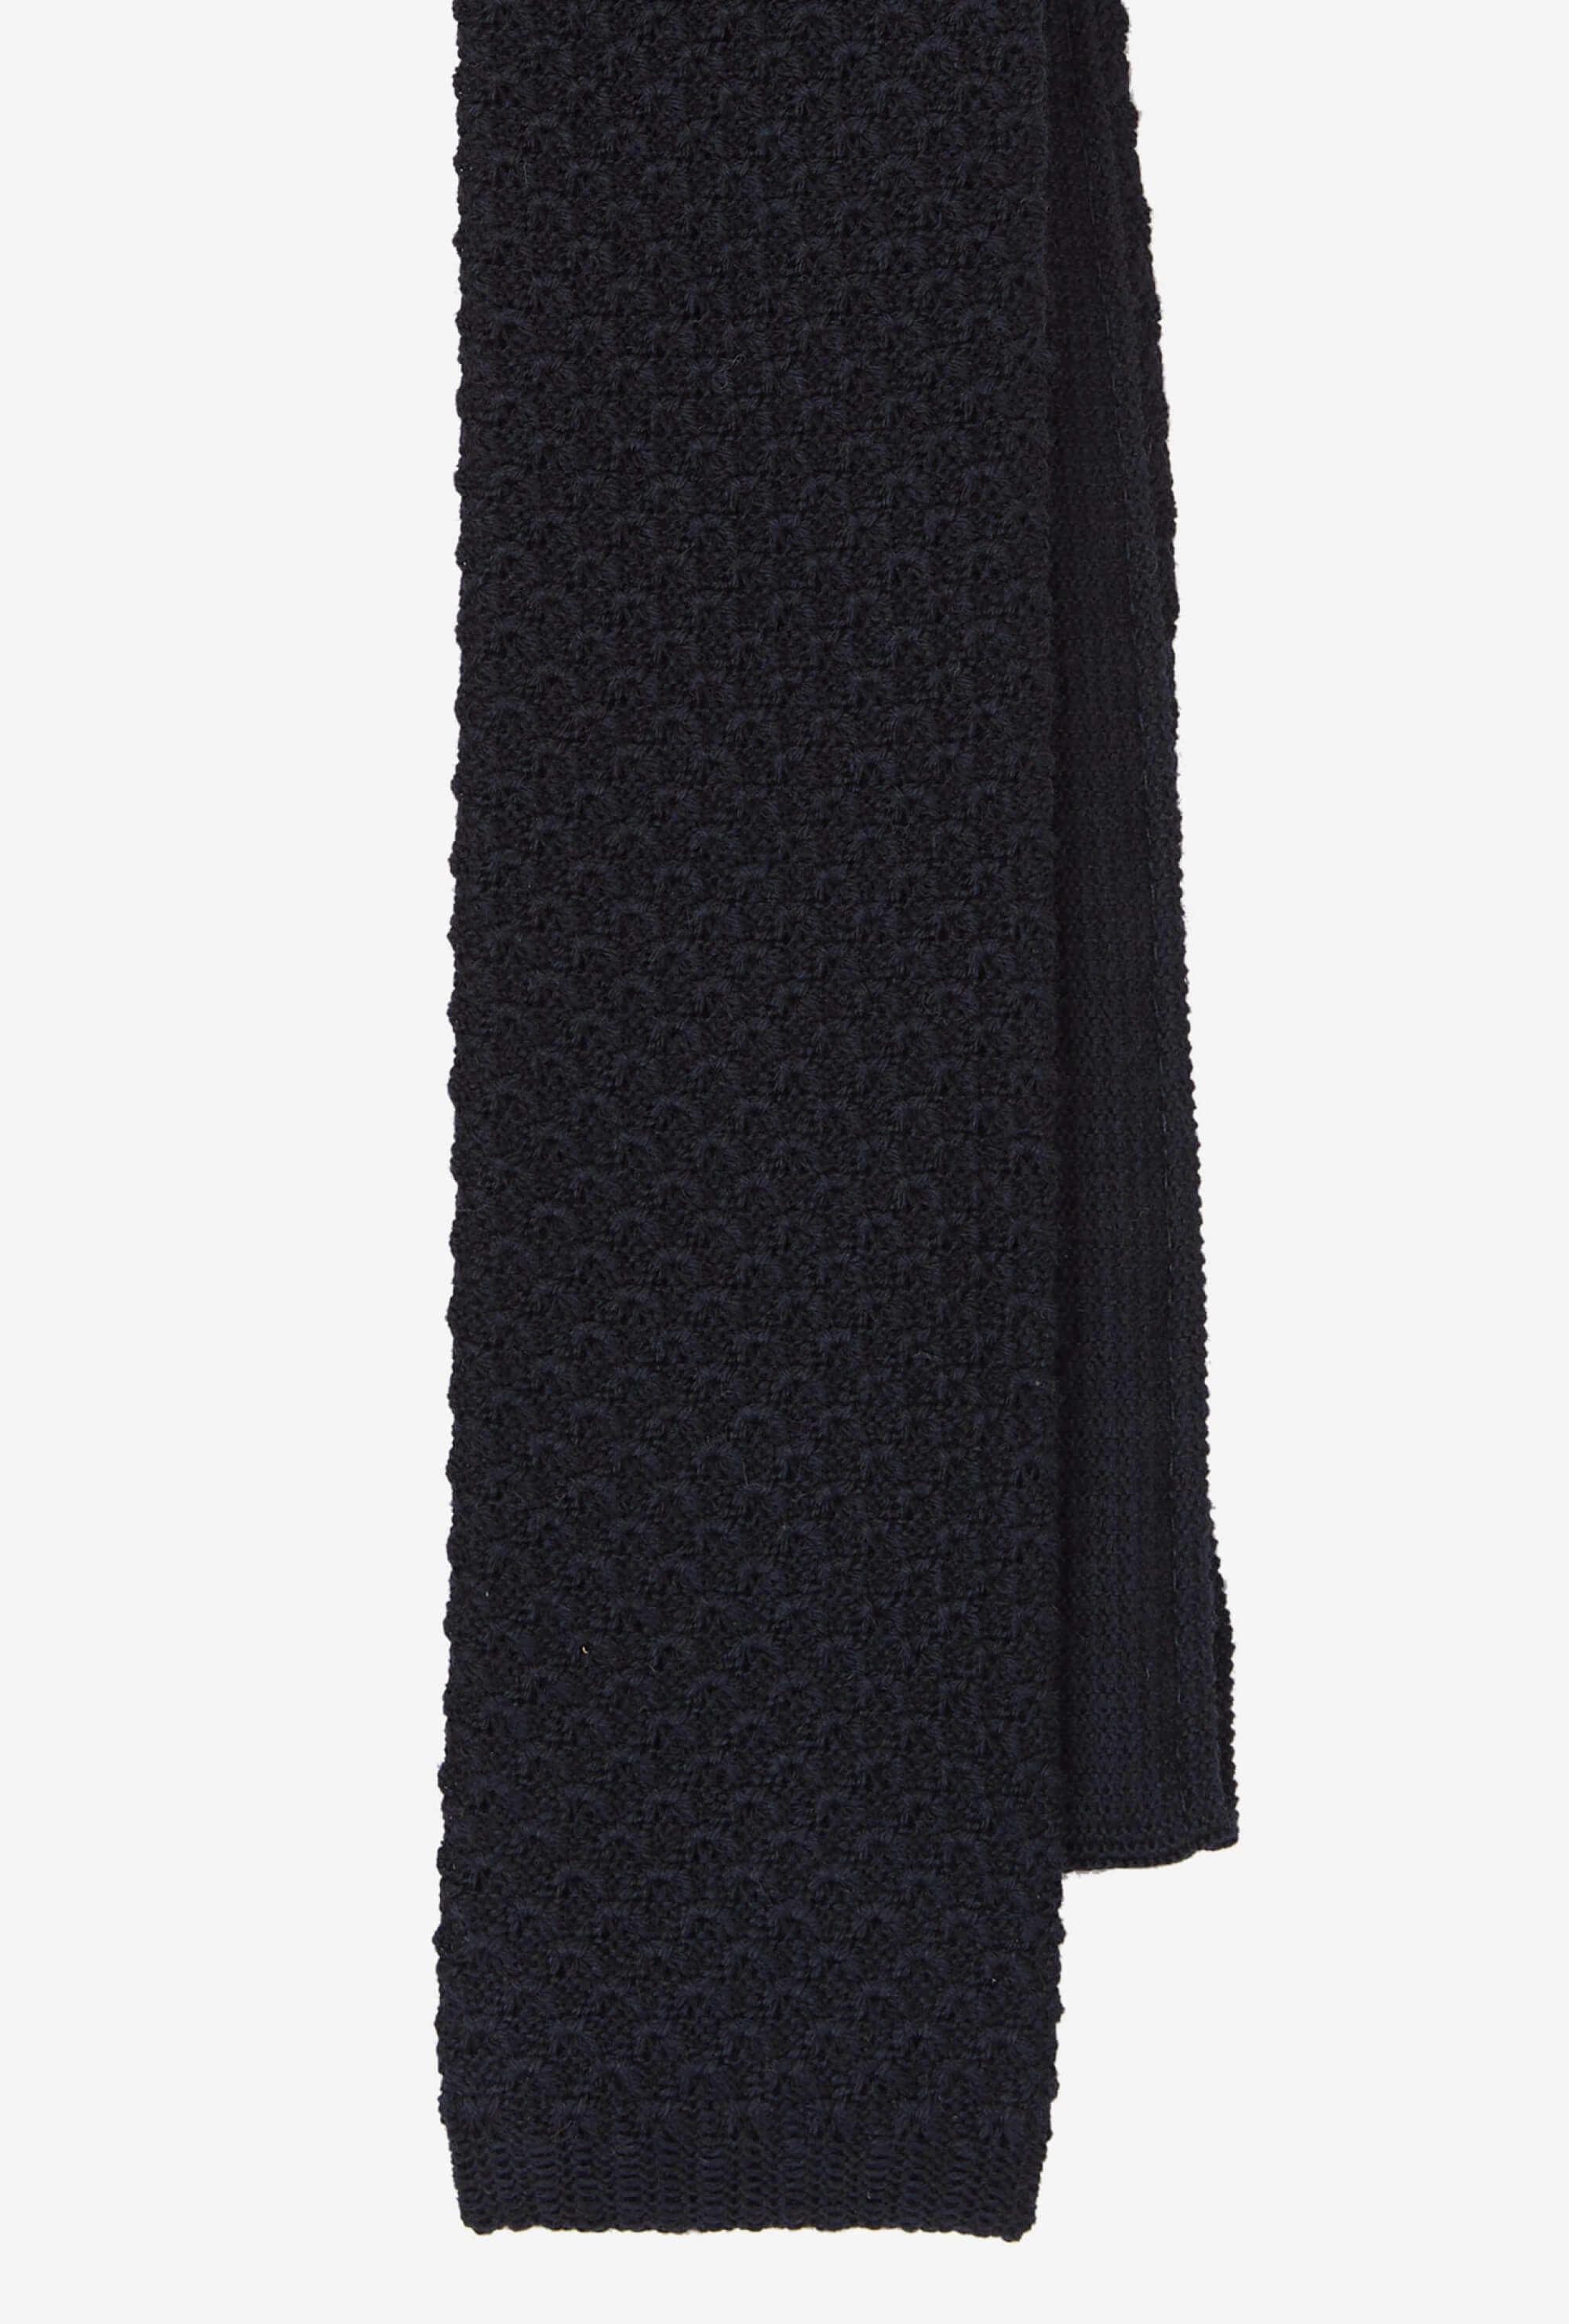 Knit Tie Wool Navy